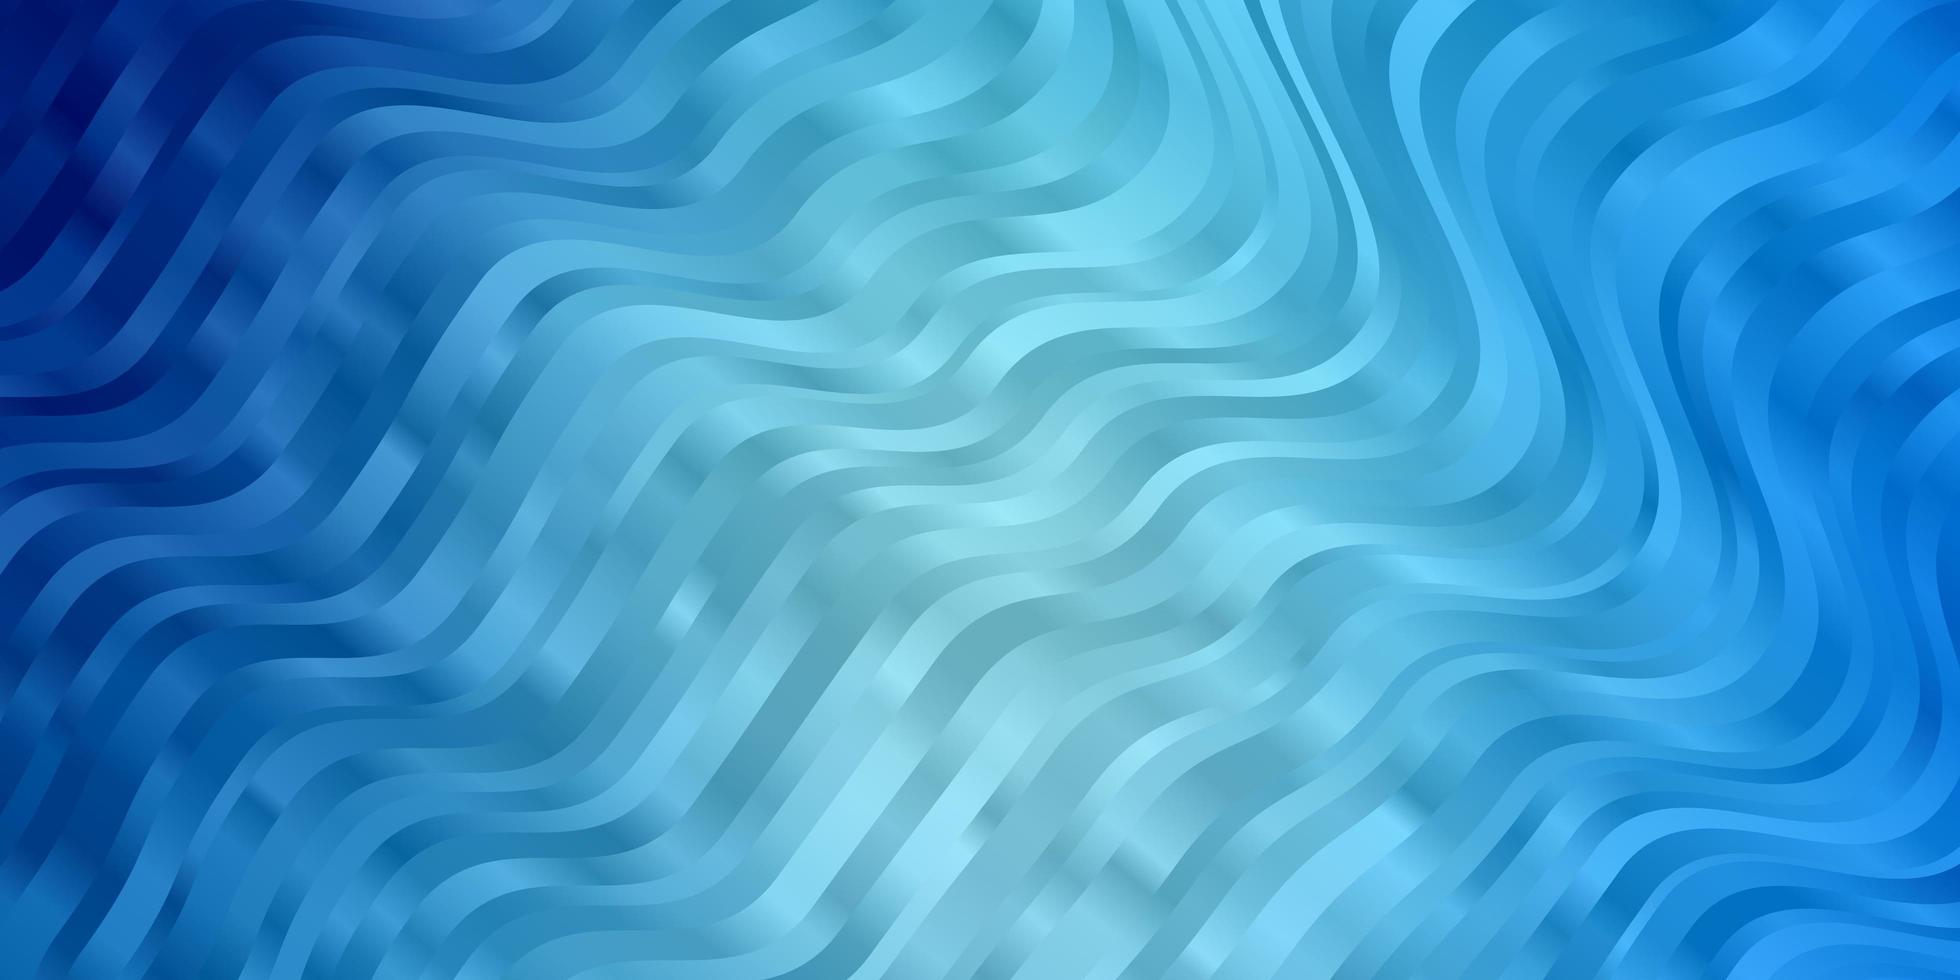 padrão de vetor azul claro com linhas irônicas. ilustração colorida, que consiste em curvas. padrão para livretos, folhetos.